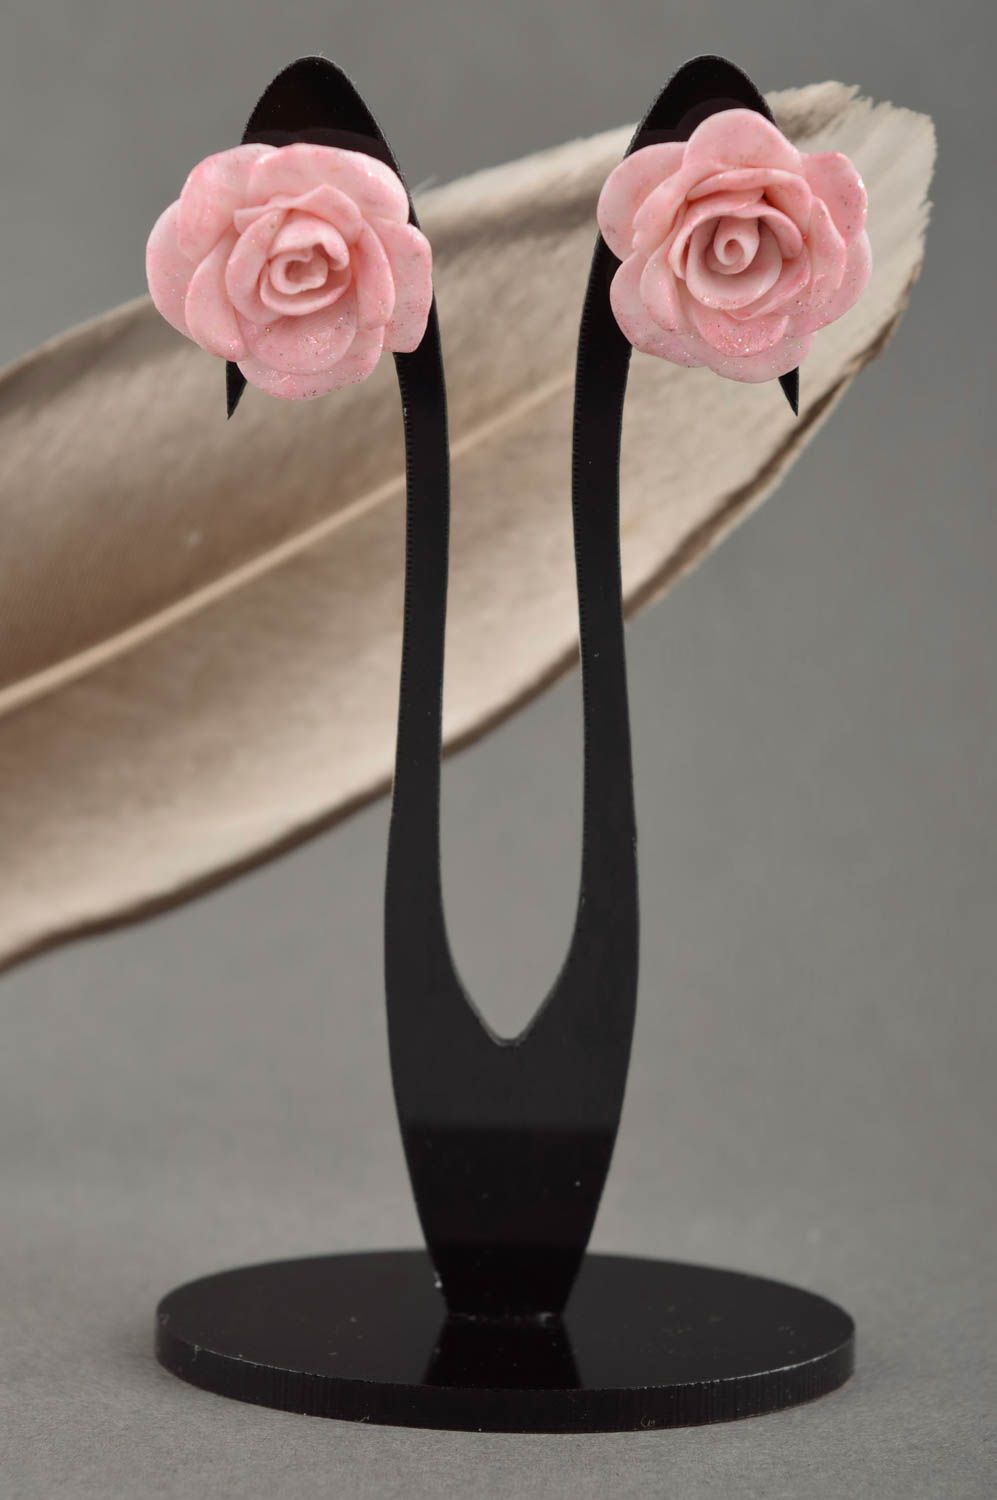 Plastic earrings roses stud earrings flower earrings made of polymer clay photo 1